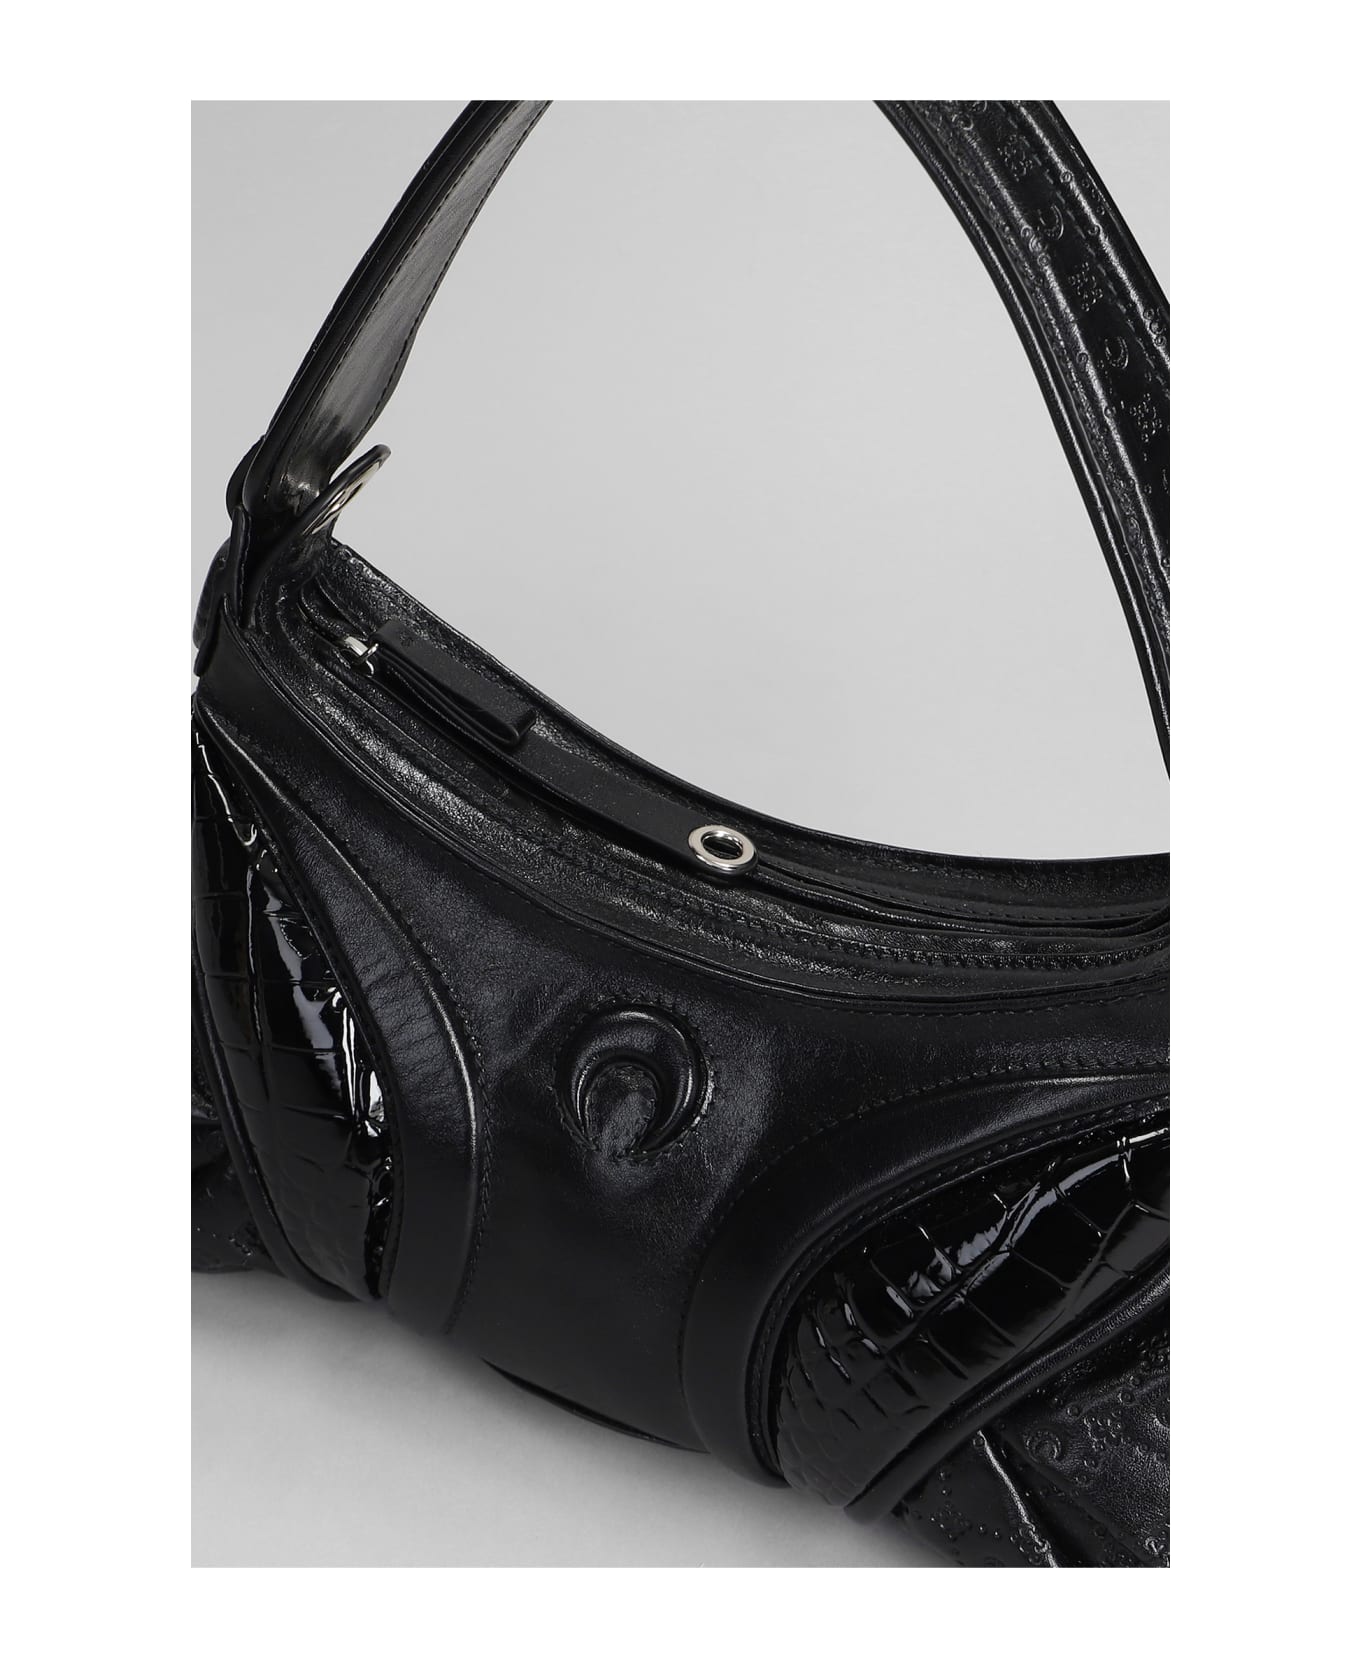 Marine Serre Black Leather Stardust Handbag - BLACK